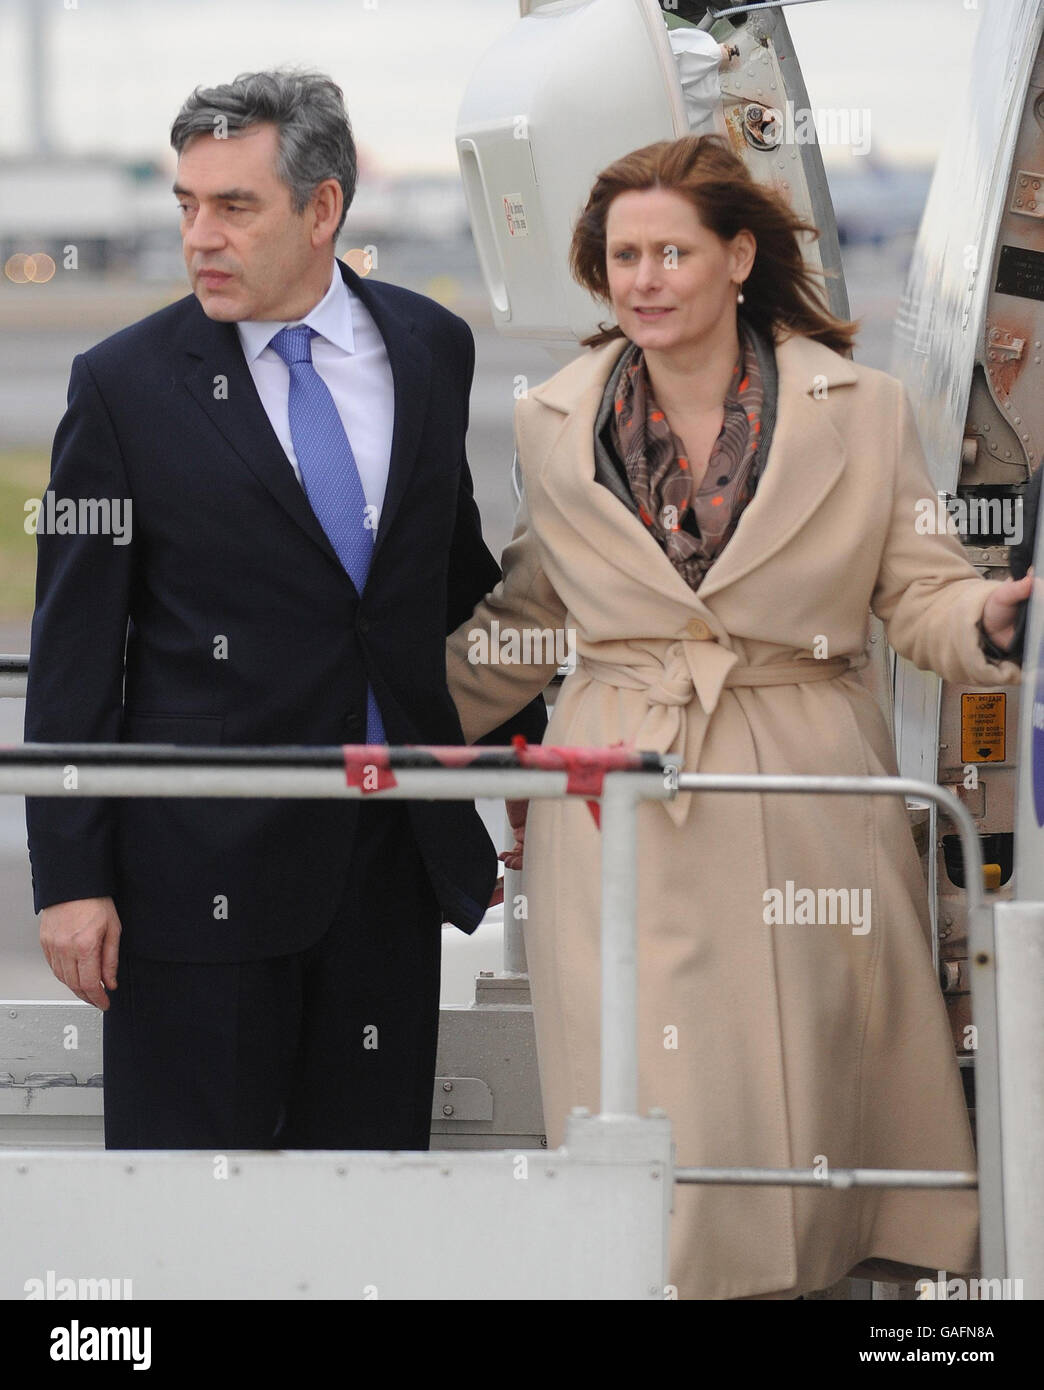 Der britische Premierminister Gordon Brown und seine Frau Sarah steigen heute am Flughafen Heathrow in sein Flugzeug ein, das nach China geht. Ein Boeing 777-Flugzeug von British Airways, das aus China hereinfliegt und kurz vor der Start- und Landebahn am Flughafen Heathrow landete, um das Flugzeug des Premierministers zu verzögern. Stockfoto